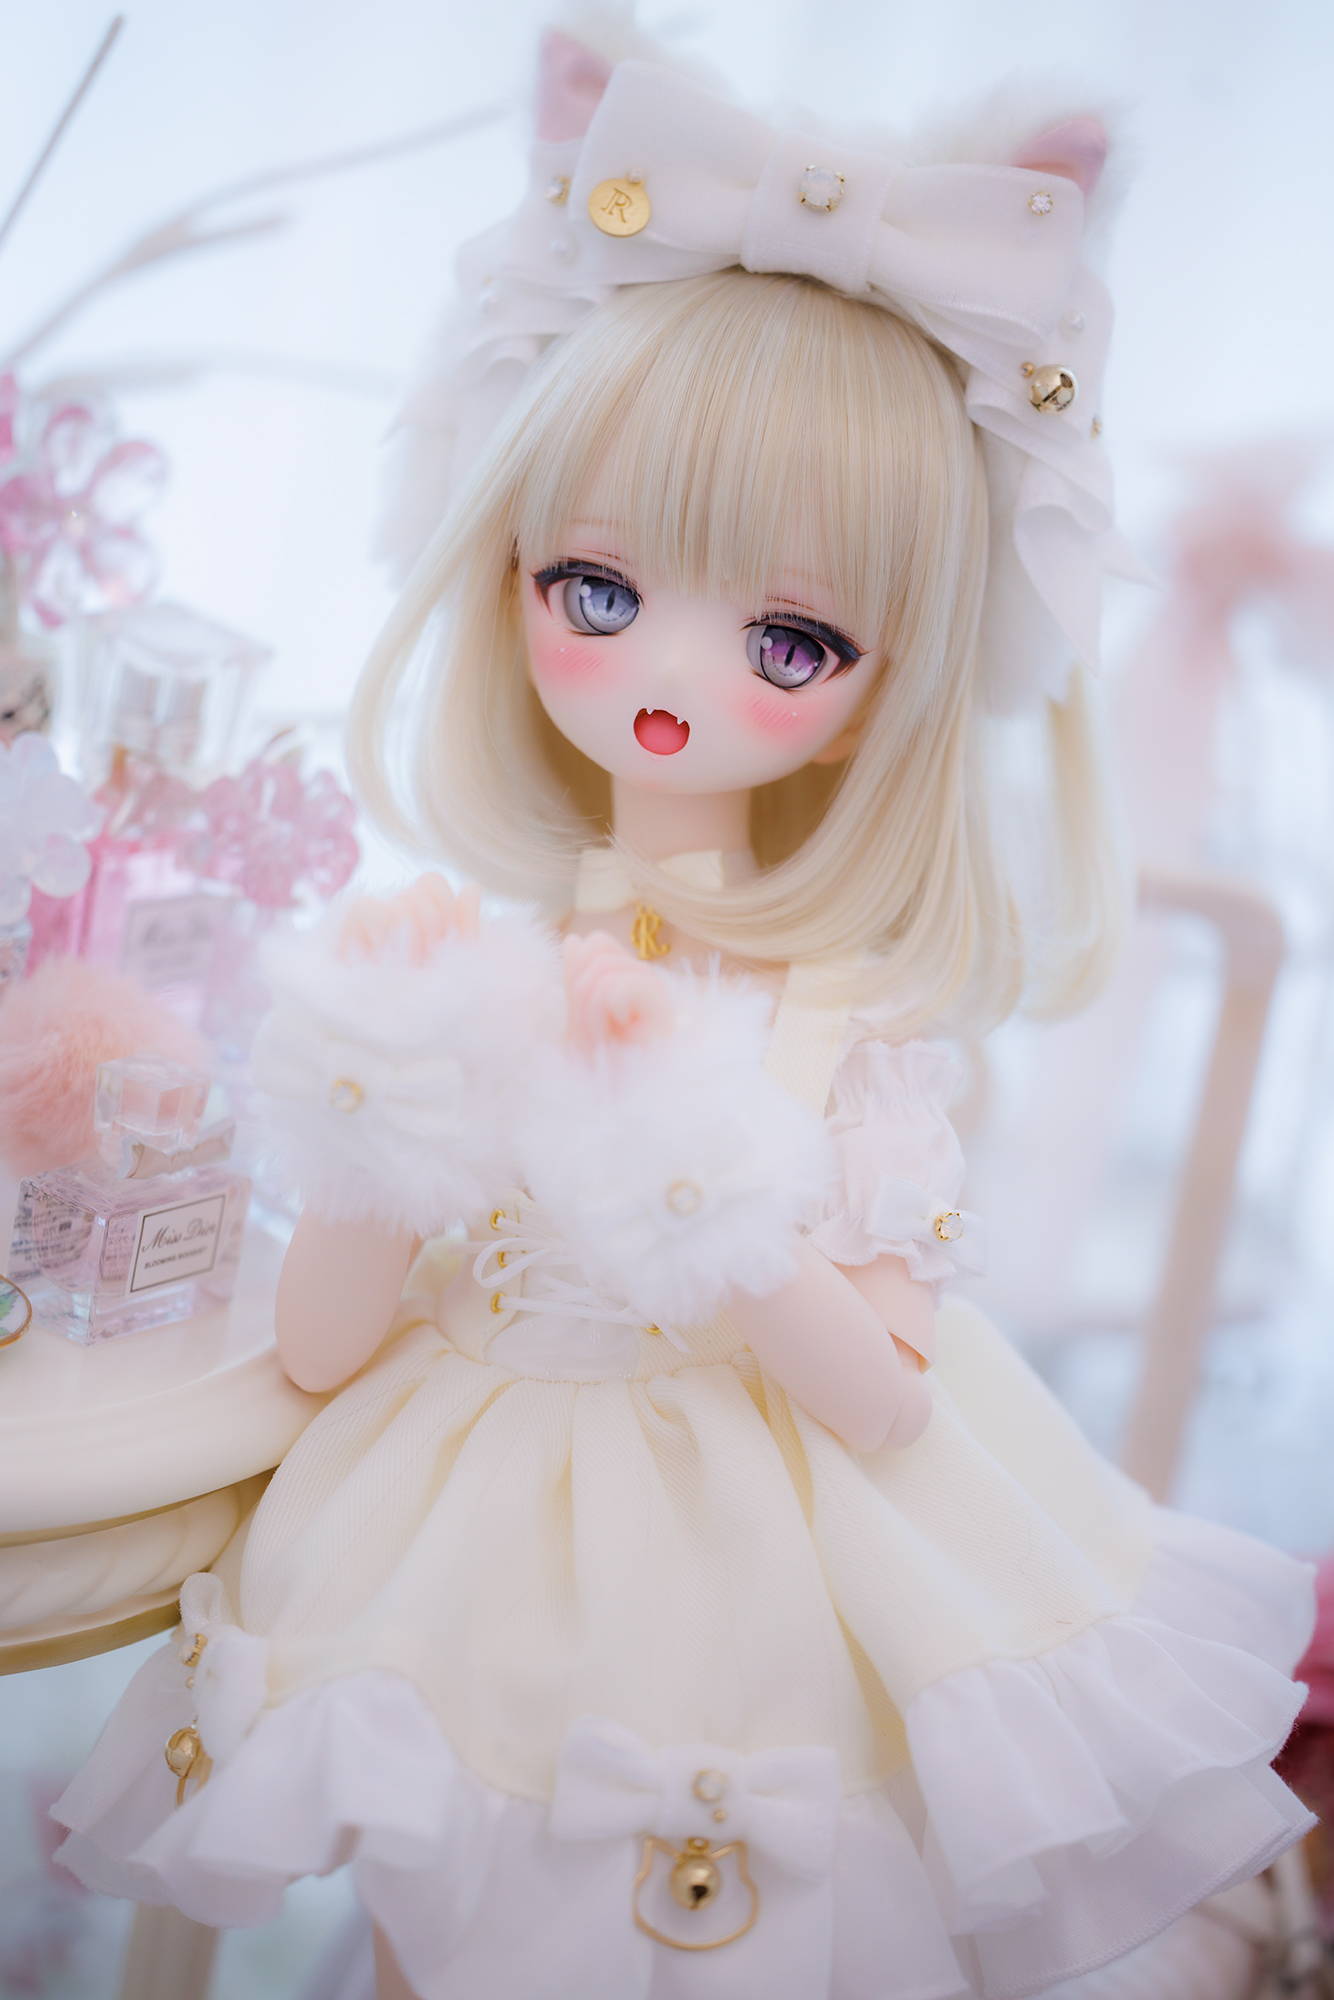 https://ronshuka.jp/custom-dolls/Neige